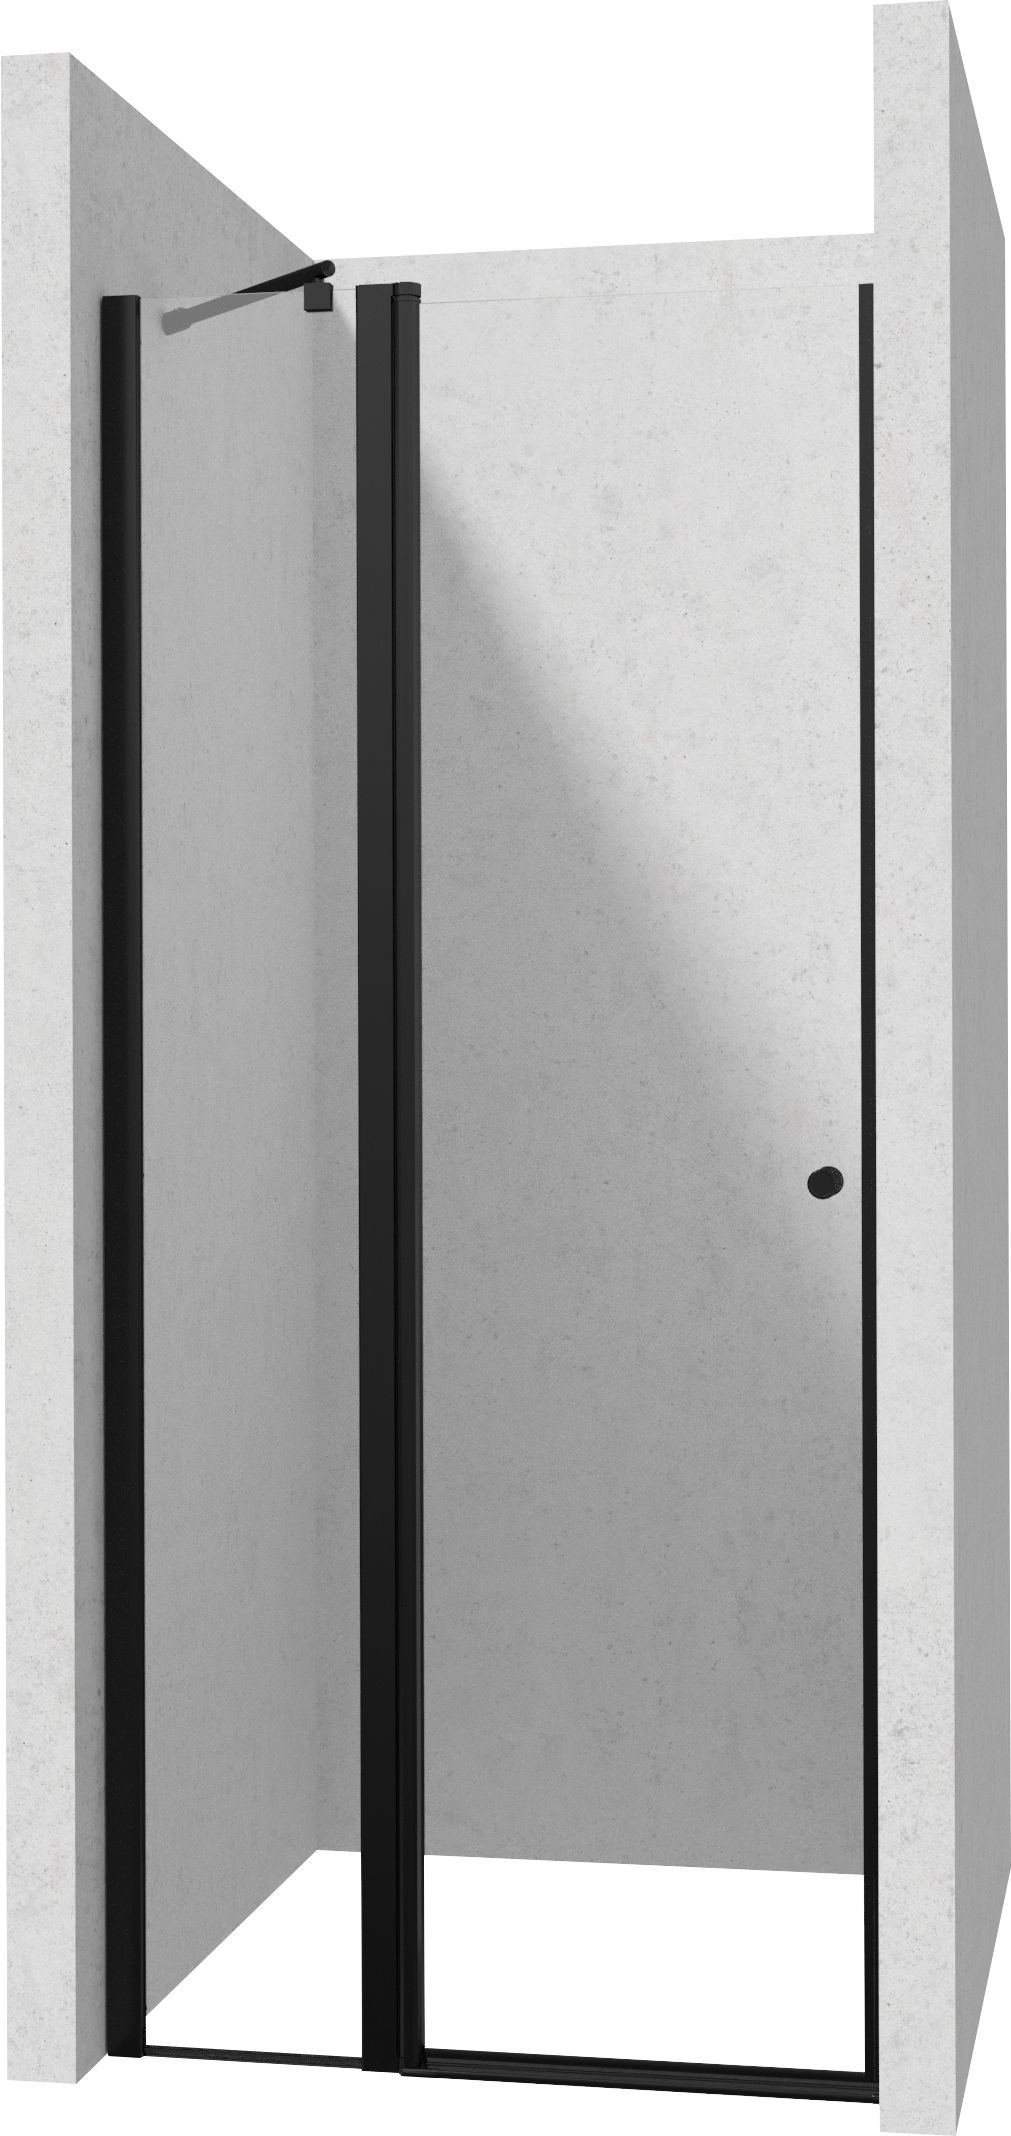 Drzwi prysznicowe 80 cm - uchylne - KTSUN42P - Główne zdjęcie produktowe